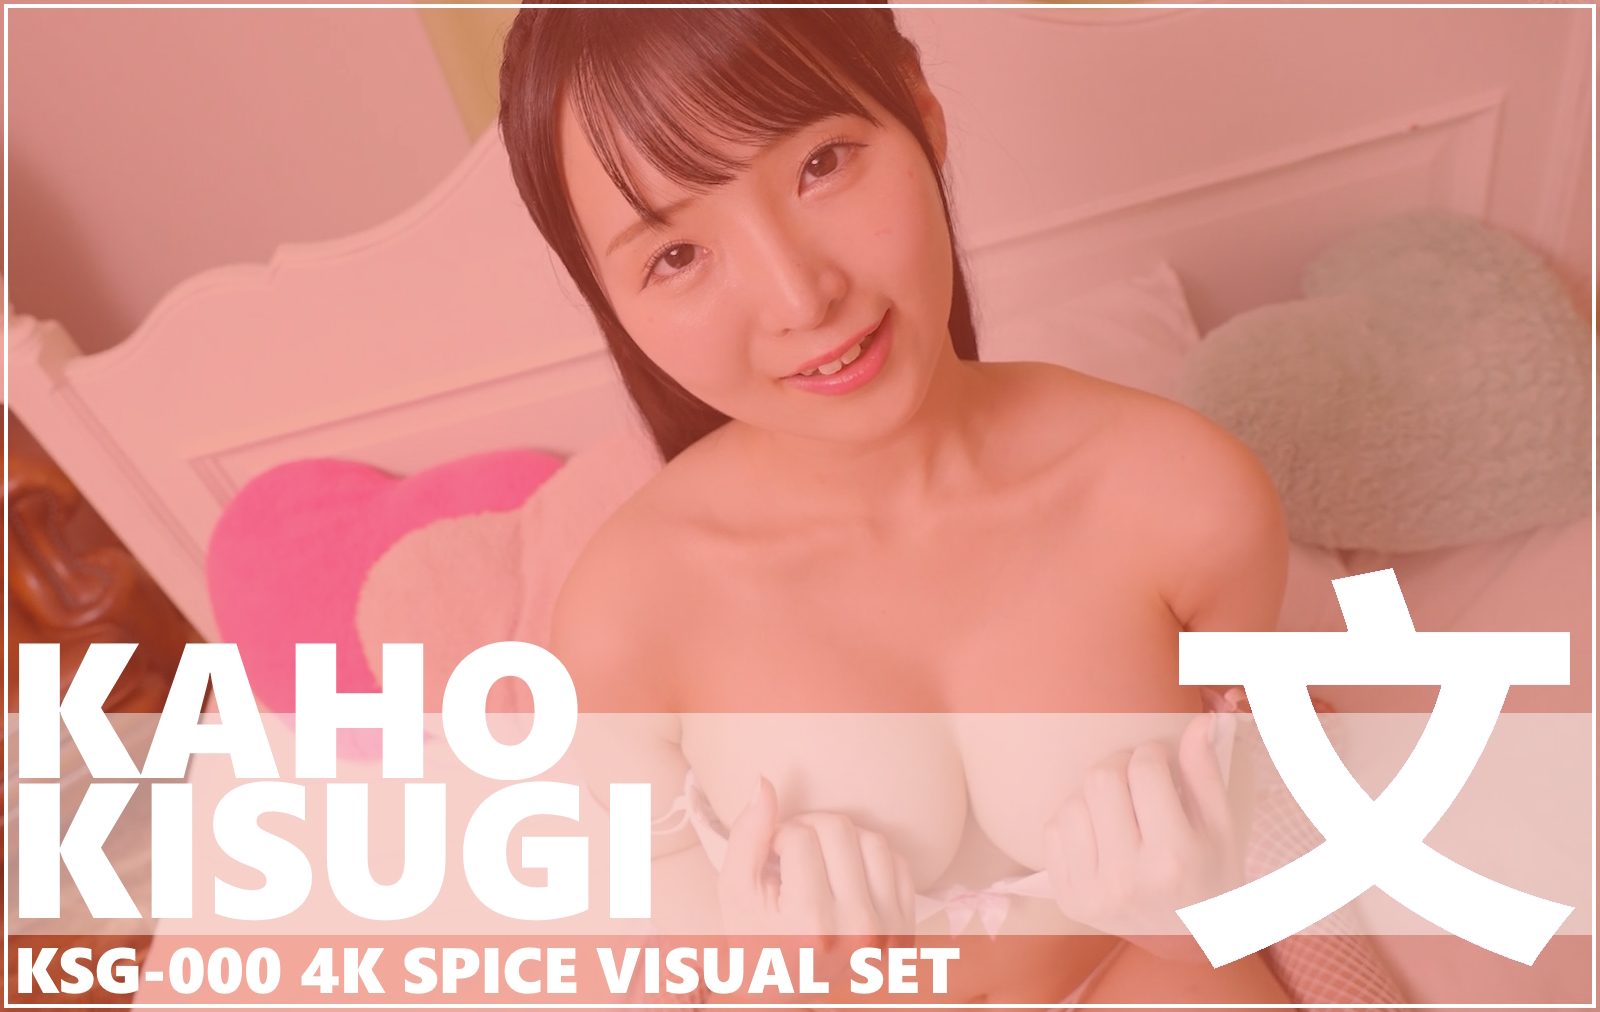 KSG-000 Kaho Kisugi 4K Spice Visual DVD Set